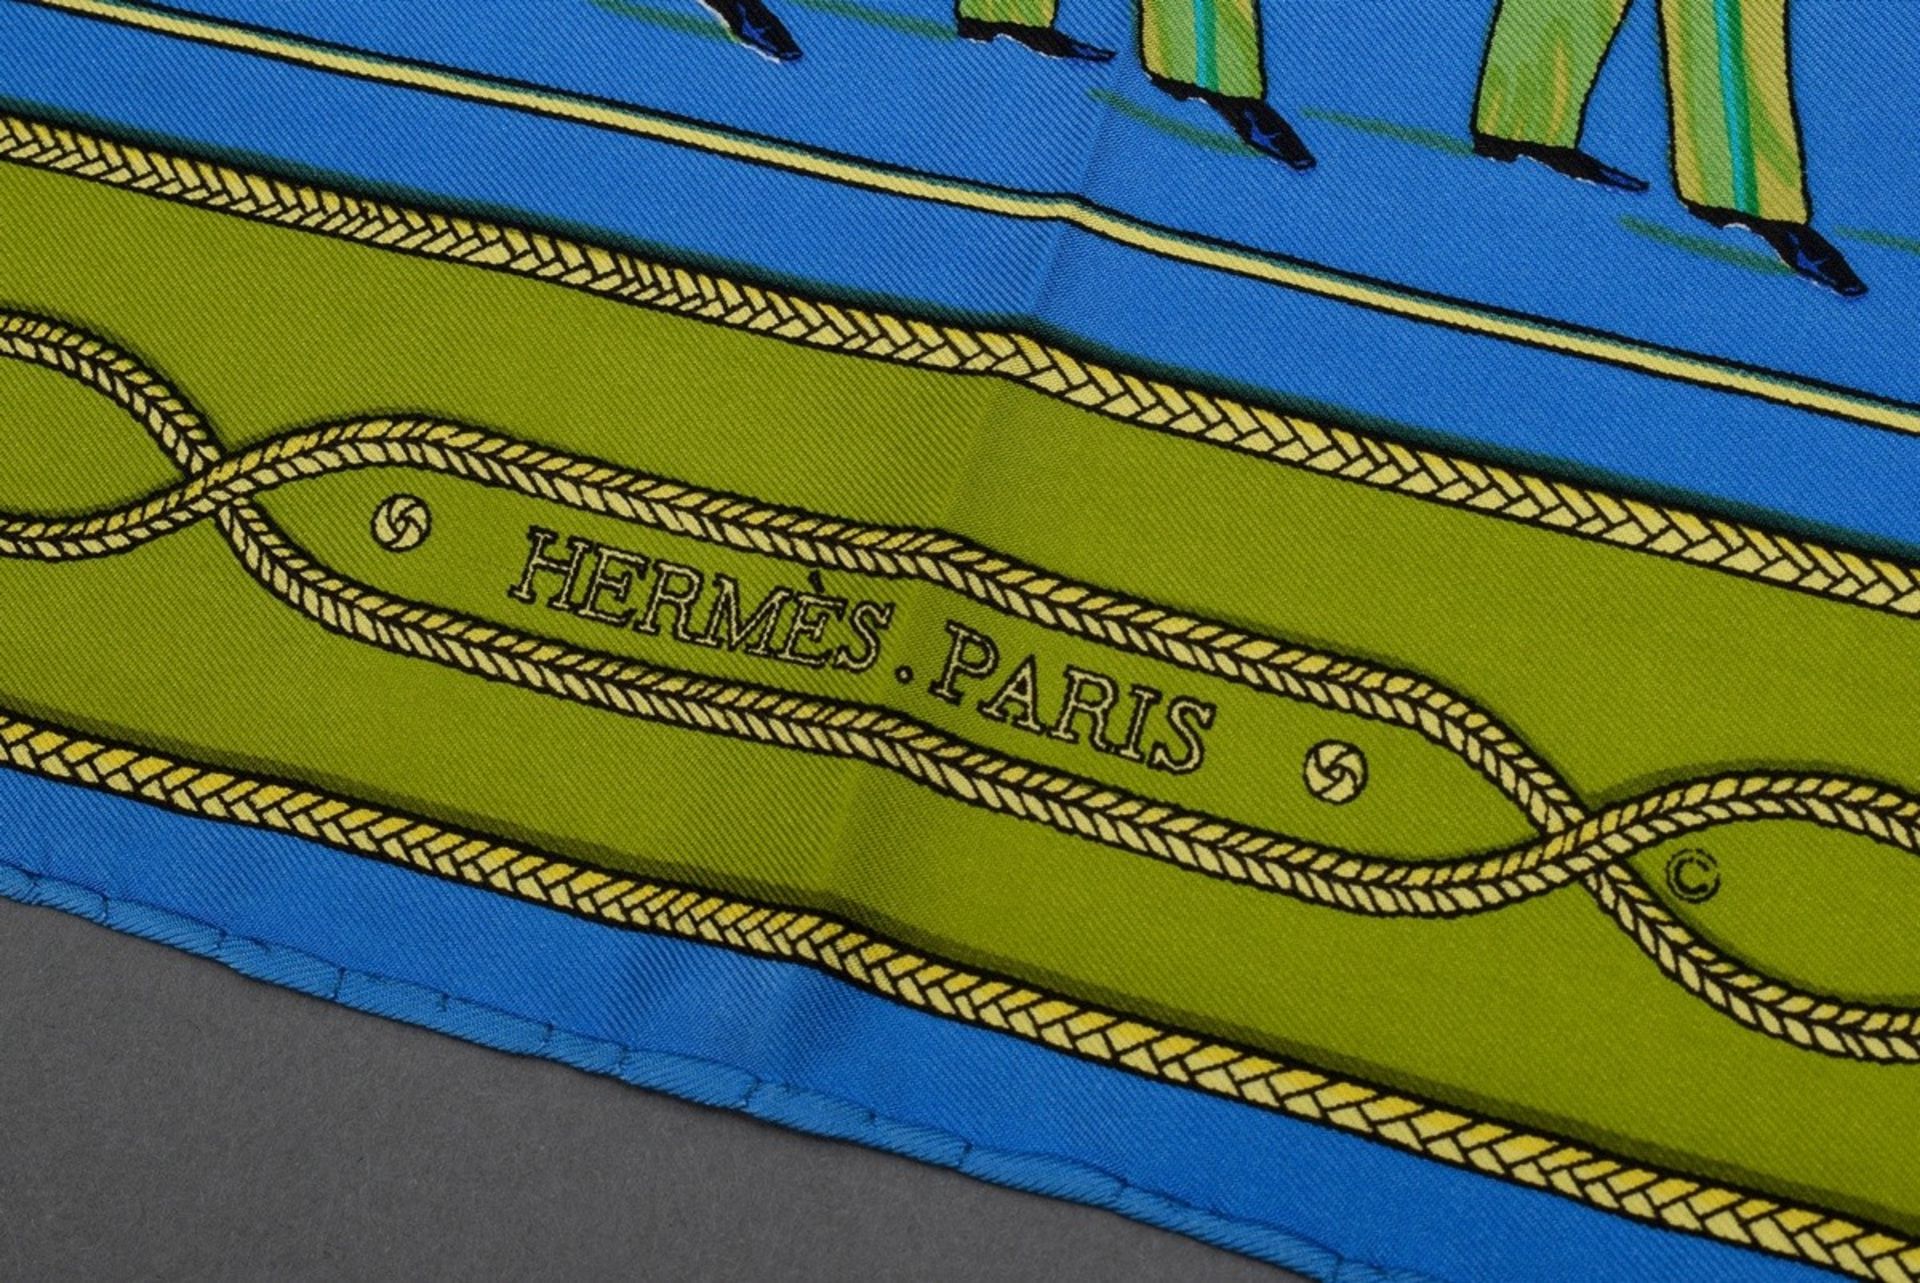 Hermès silk carré "La Parade", green/light blue, design: Françoise Héron, 90x90cm, label missing, s - Image 2 of 2